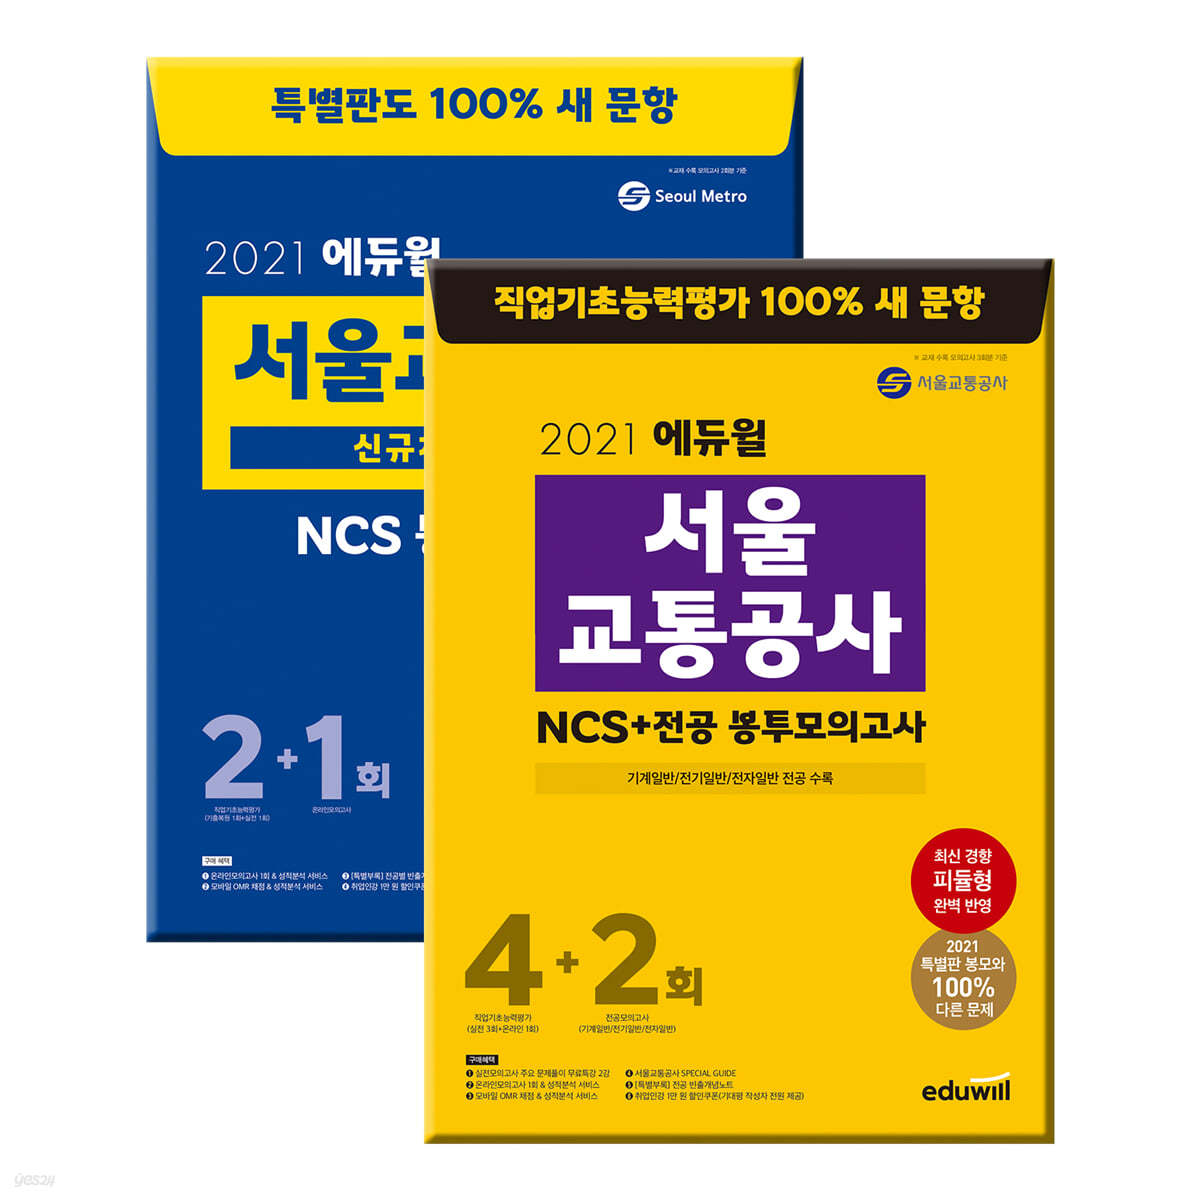 2021 에듀윌 서울교통공사 봉투모의고사 세트: NCS+전공, 특별판